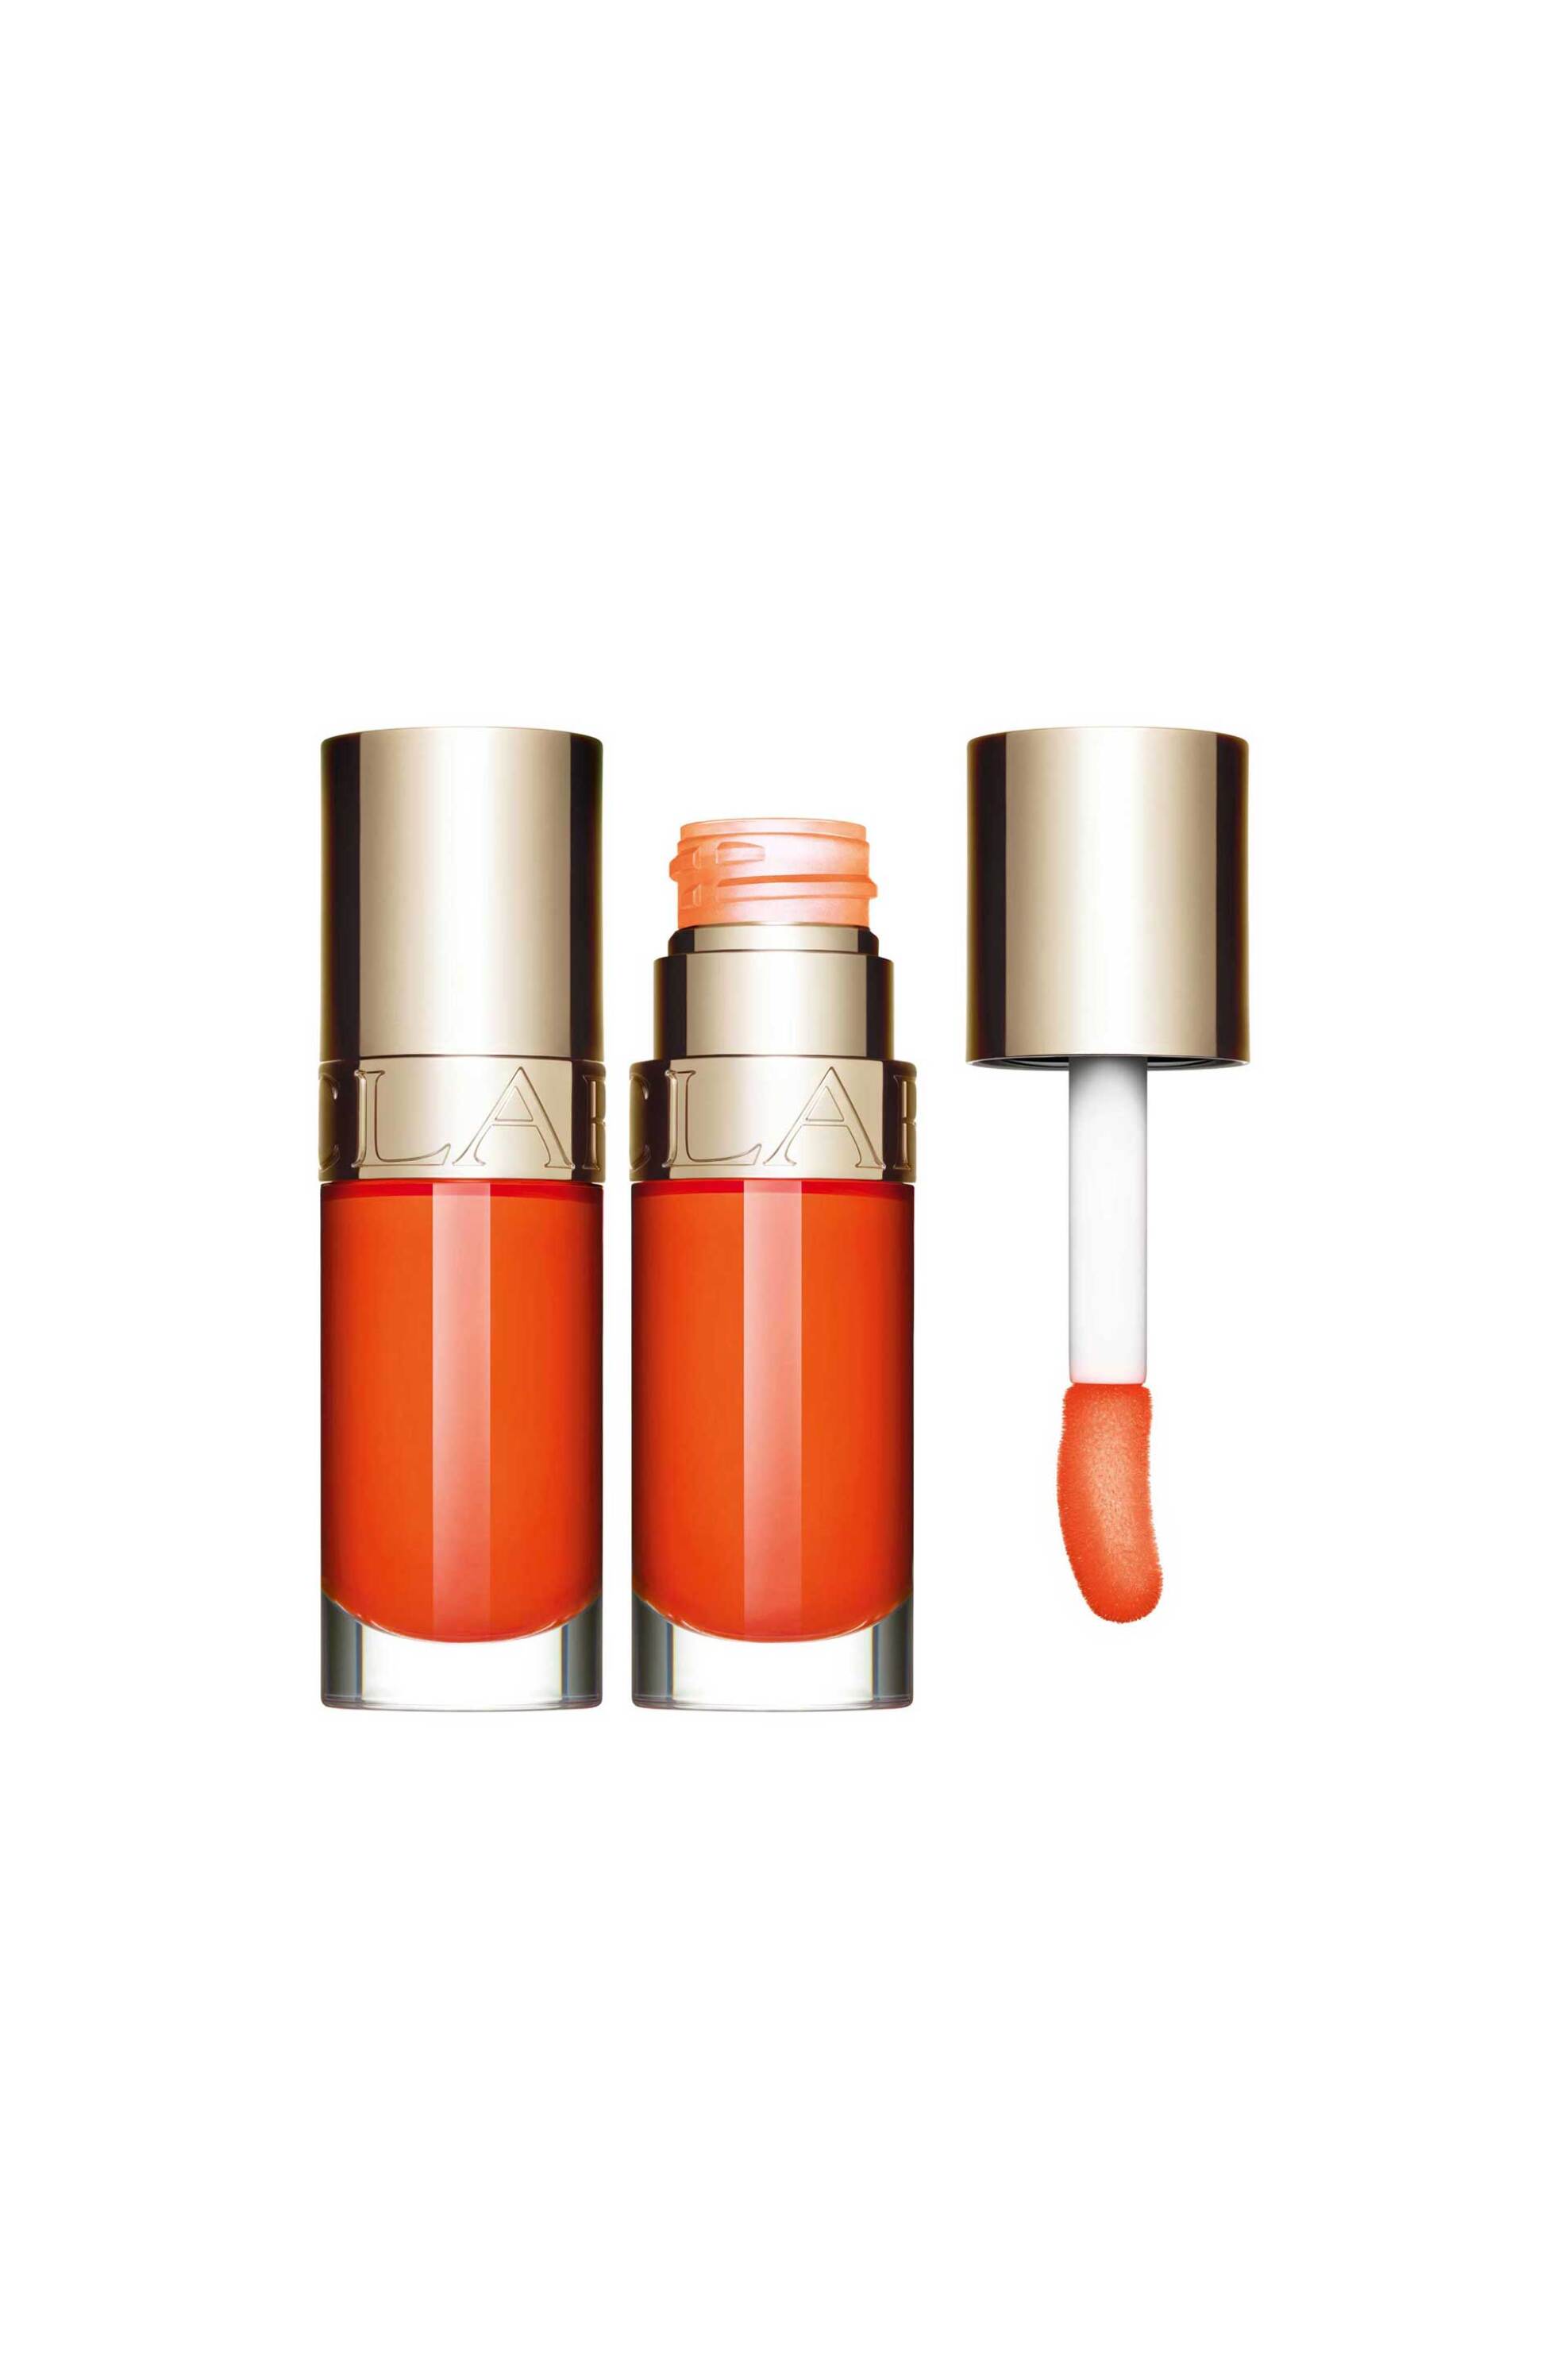 Προϊόντα Ομορφιάς > Μακιγιάζ > Μακιγιάζ Χειλιών > Lip Gloss Clarins Lip Comfort Oil Power Of Colours - Limited Edition 7 ml - 80105092 22 Daring Orange